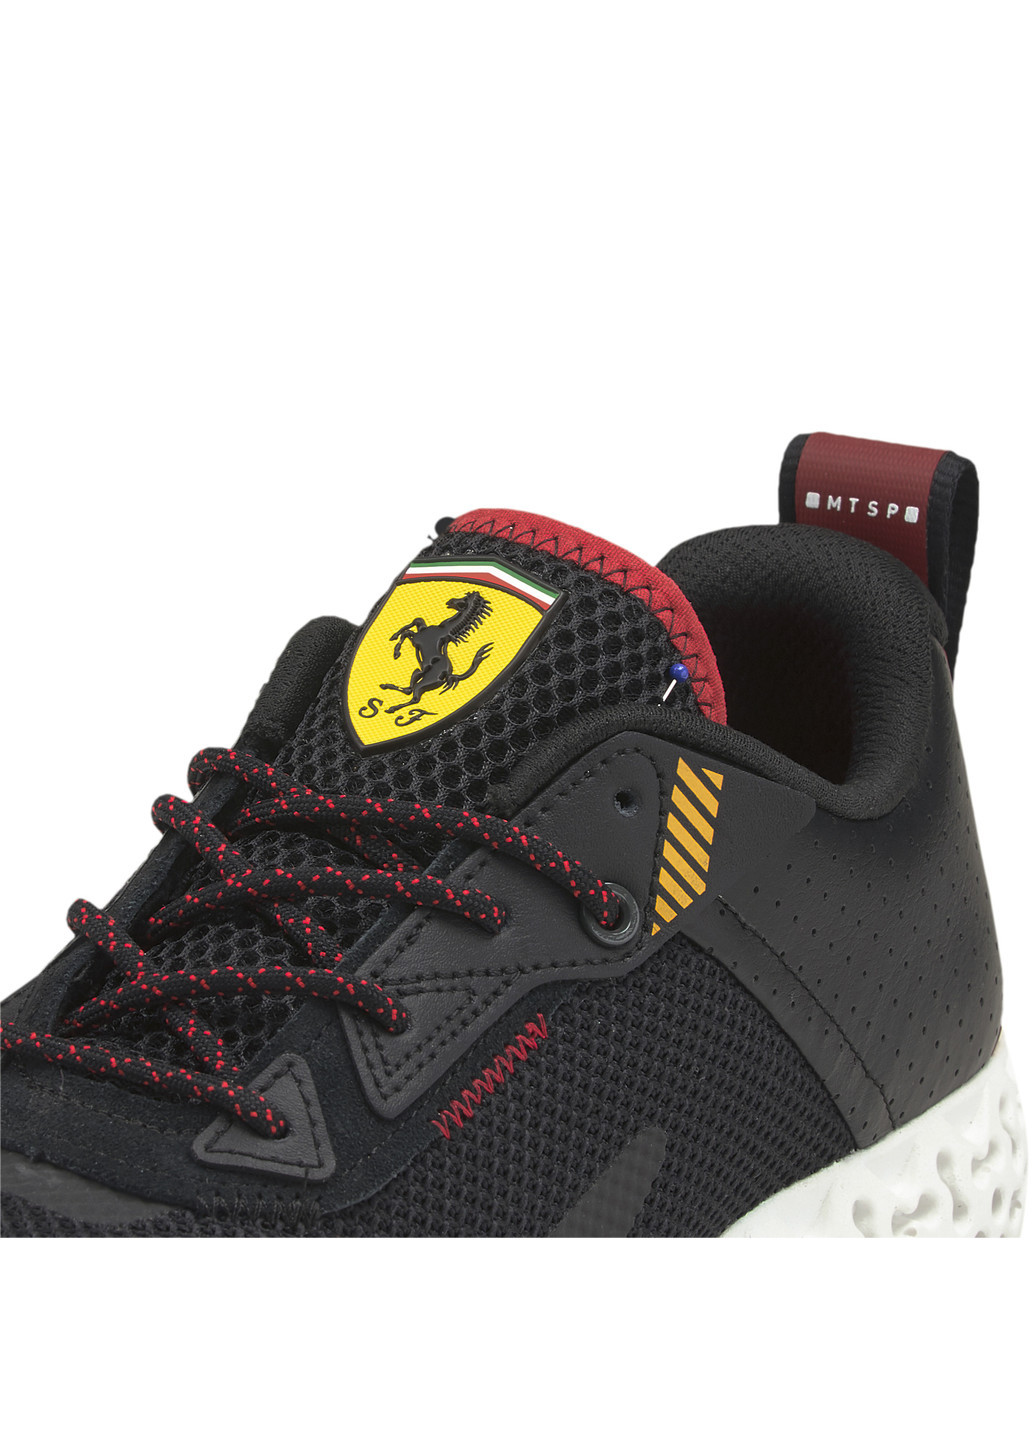 Черные всесезонные кроссовки scuderia ferrari rct xetic forza men's motorsport shoes Puma